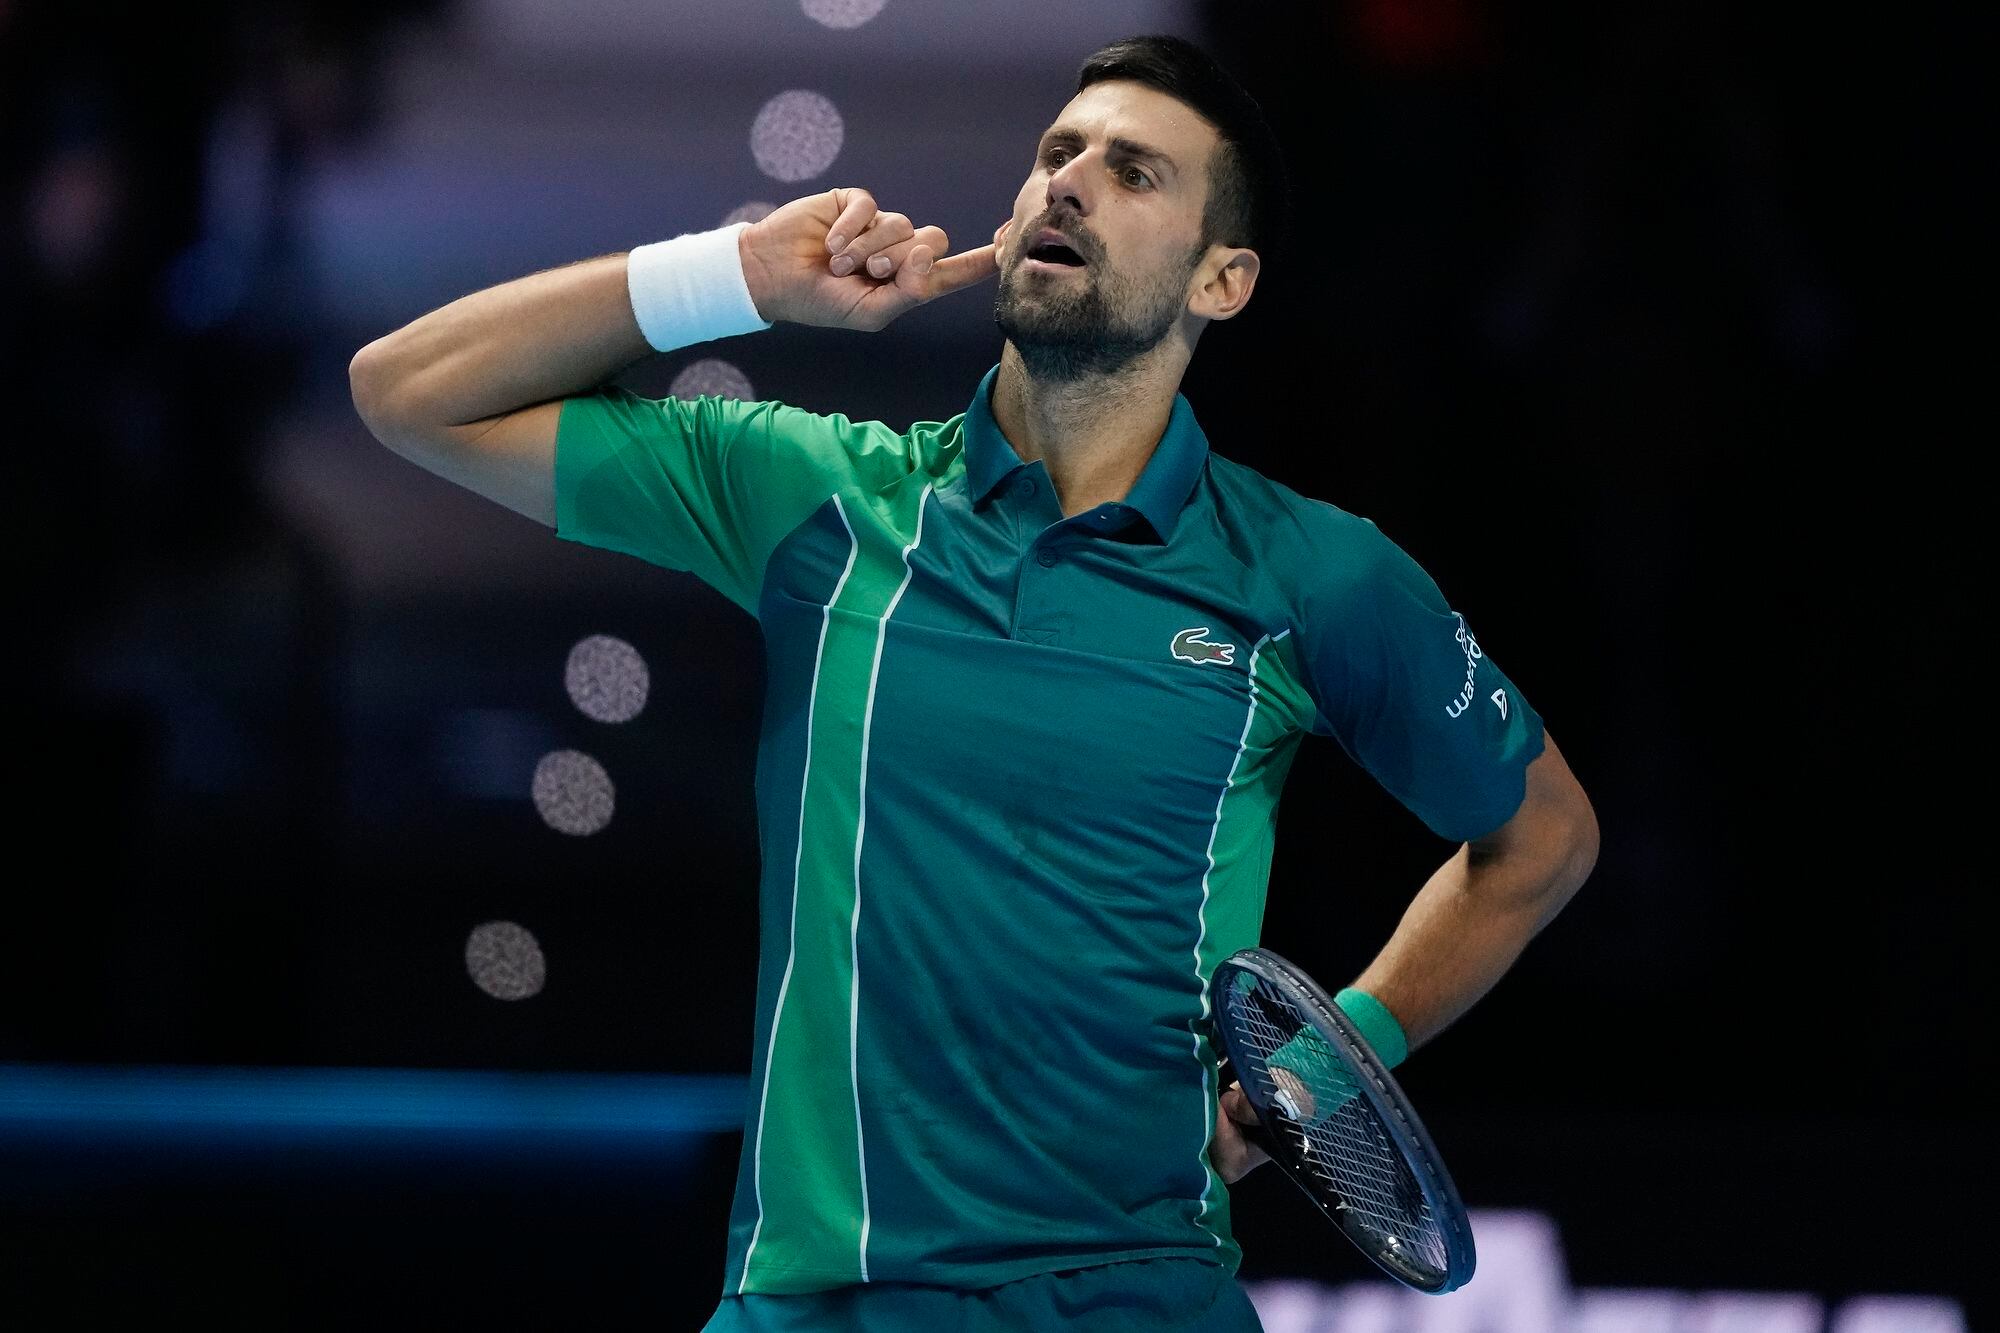 Masters de Turín: Novak Djokovic barrió a Carlos Alcaraz en un rato y se cita con Jannik Sinner en una nueva versión del duelo de generaciones